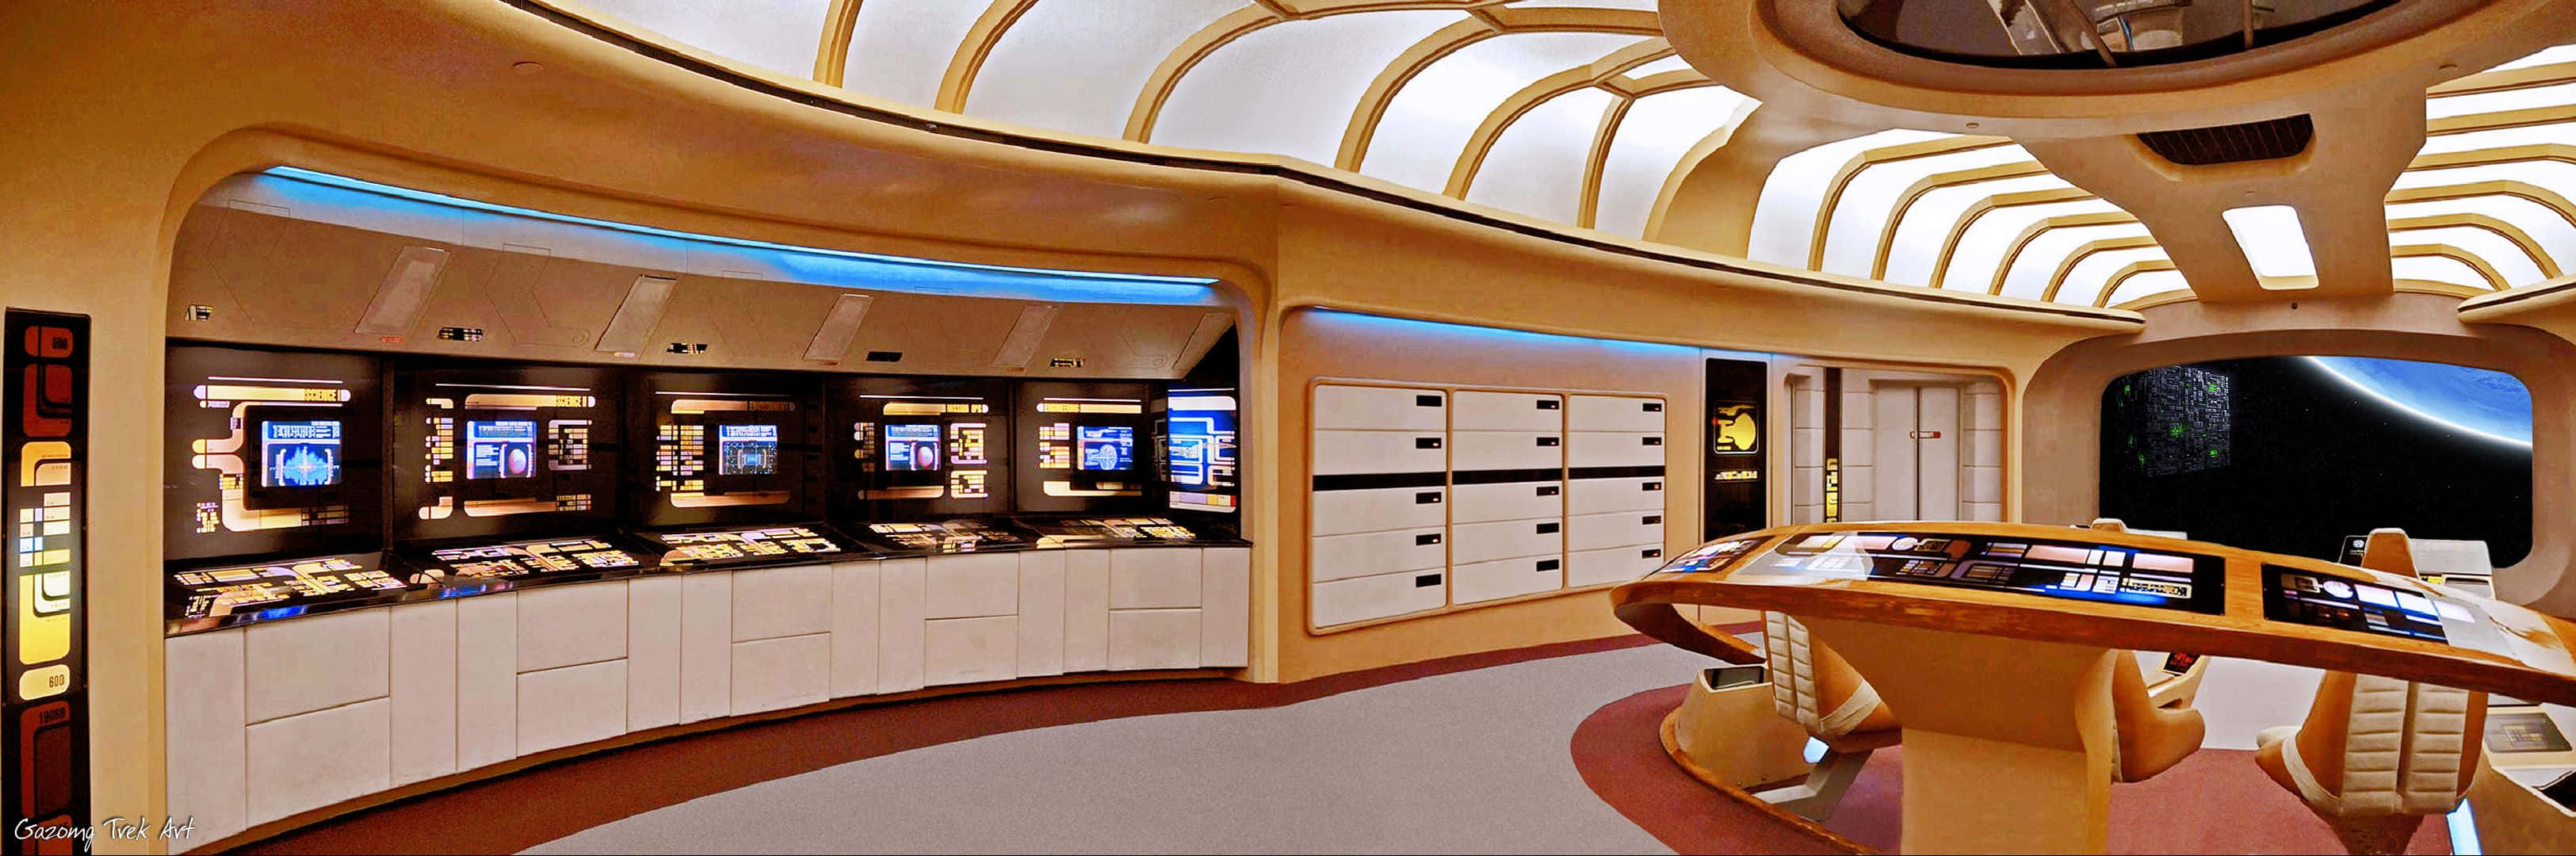 Star Trek Enterprise Bridge Panoramic Shot Wallpaper